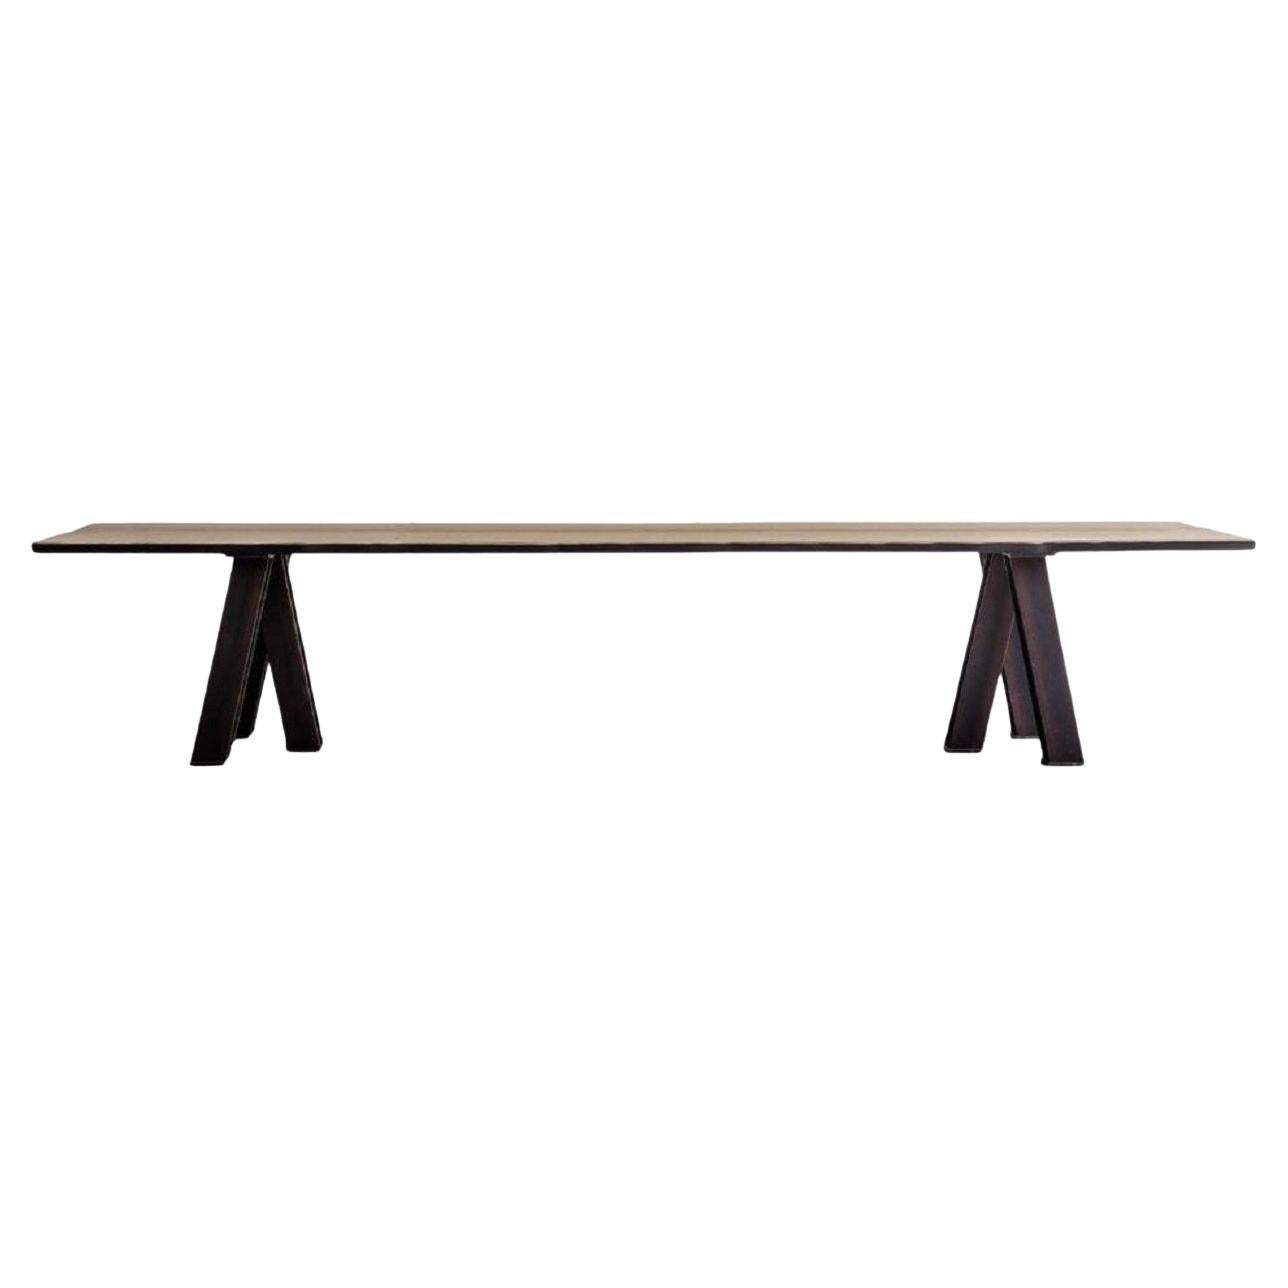 Cette table de salle à manger est fabriquée en chêne brut massif sur des pieds en acier.
La partie supérieure (environ 4 cm) a des bords d'aubier noircis, faits à partir des côtés du chêne. Table sur mesure, où presque toutes les dimensions sont